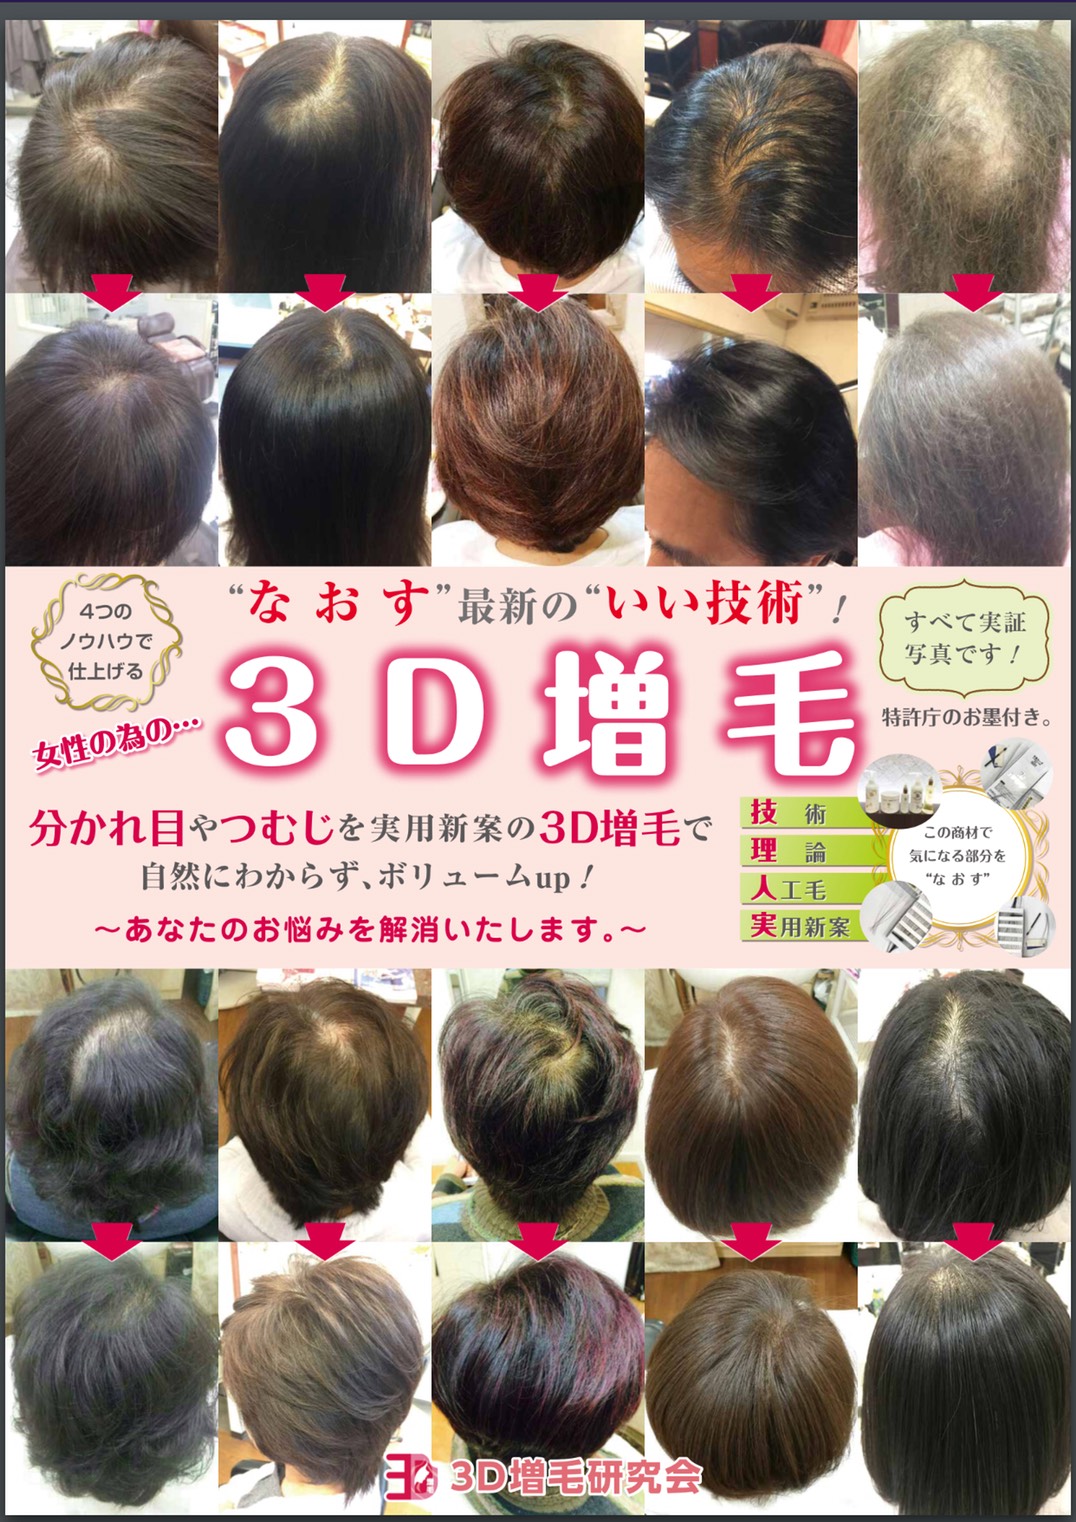 埼玉県女性の薄毛 抜け毛に特化したメニューのある美容室オズ ブログ